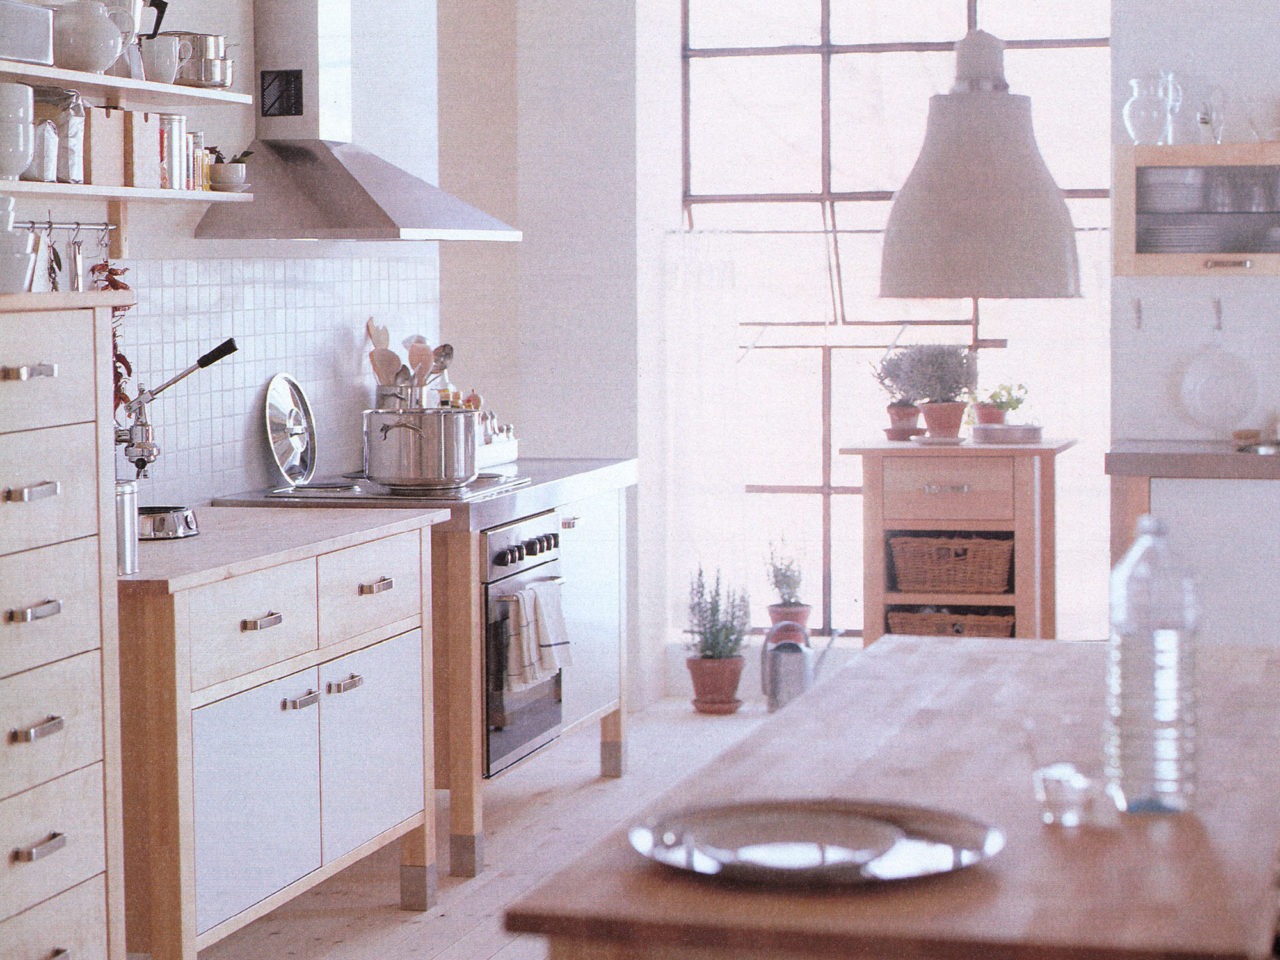 Ett kök i ljust trä, med spis, skåp och köksöar som fristående moduler. Vitkaklad vägg, detaljer i rostfritt stål.